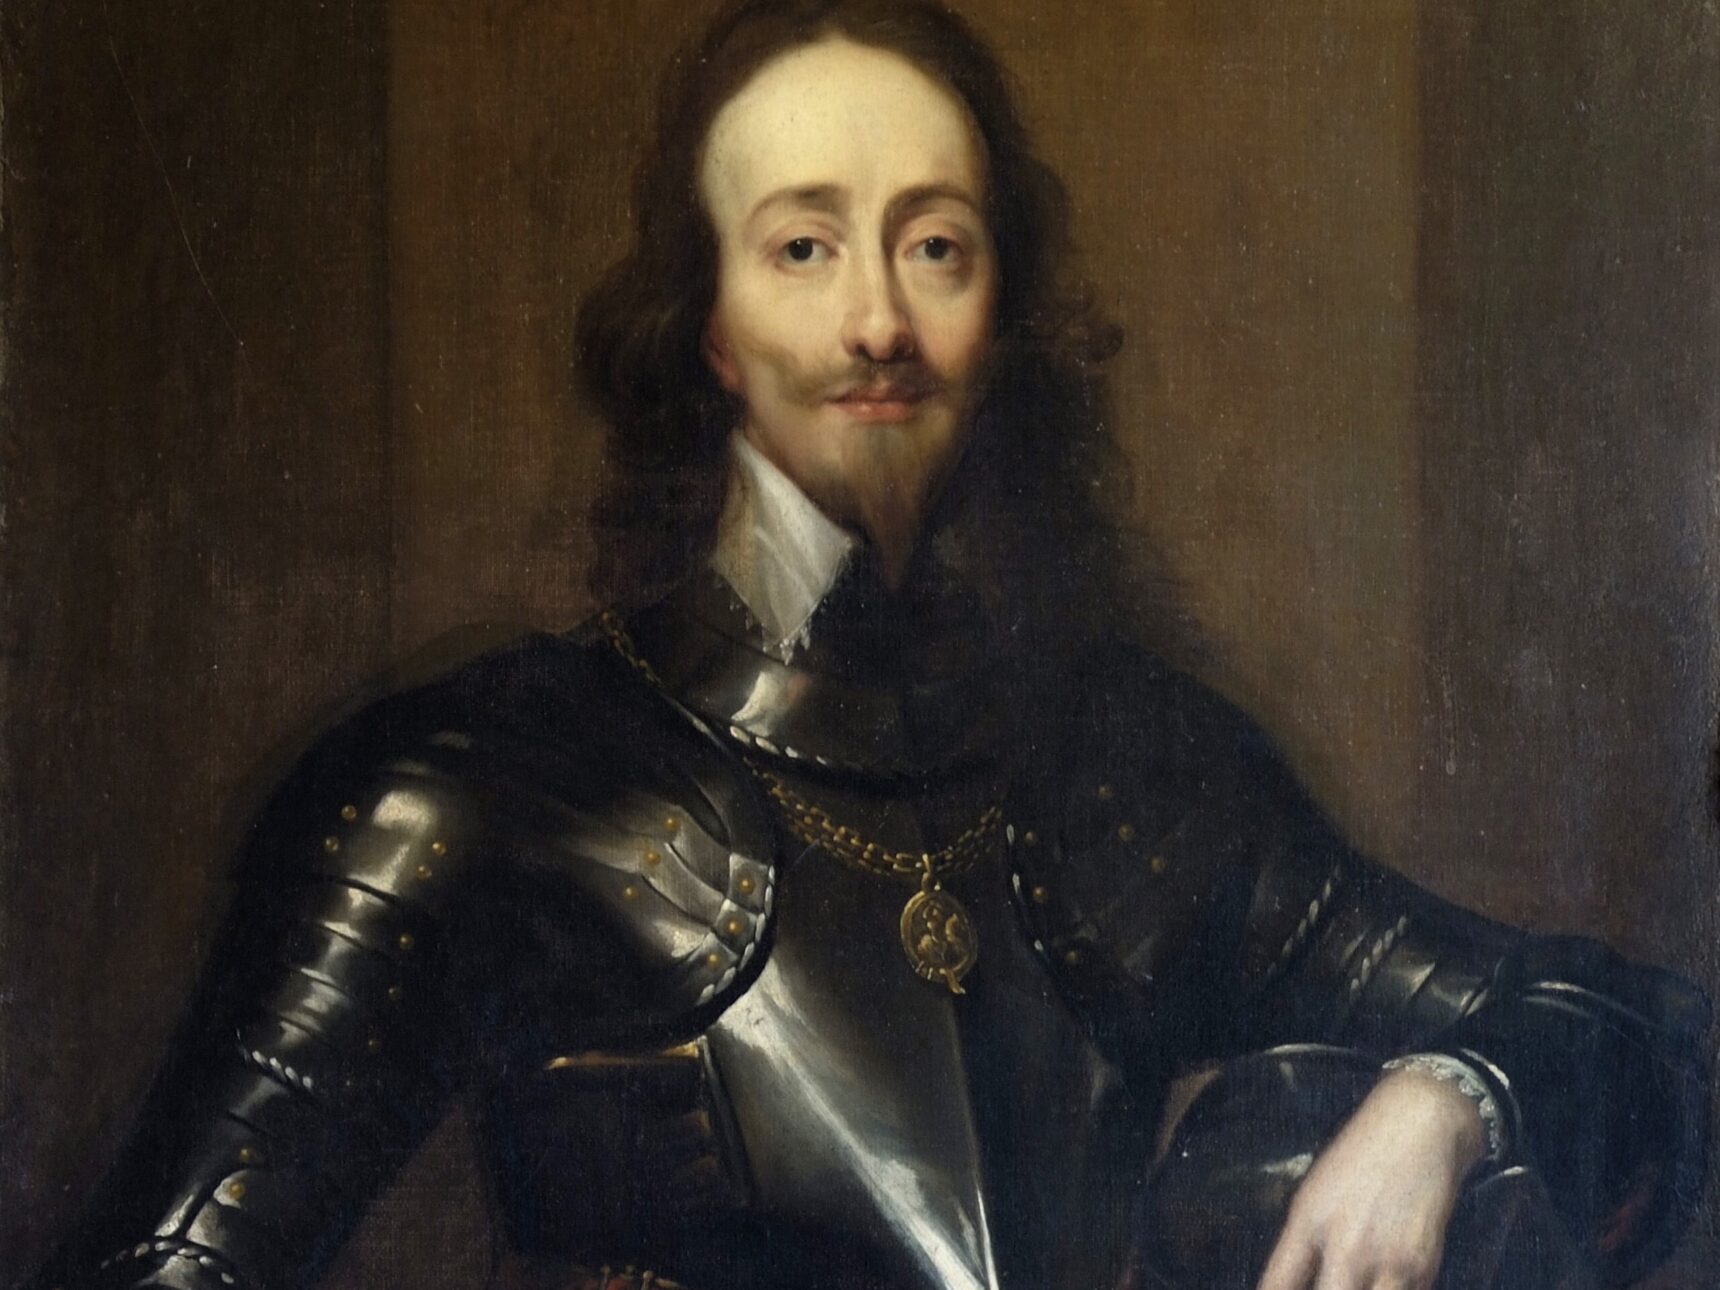 King Charles I found refuge at Sudeley Castle during the Civil War